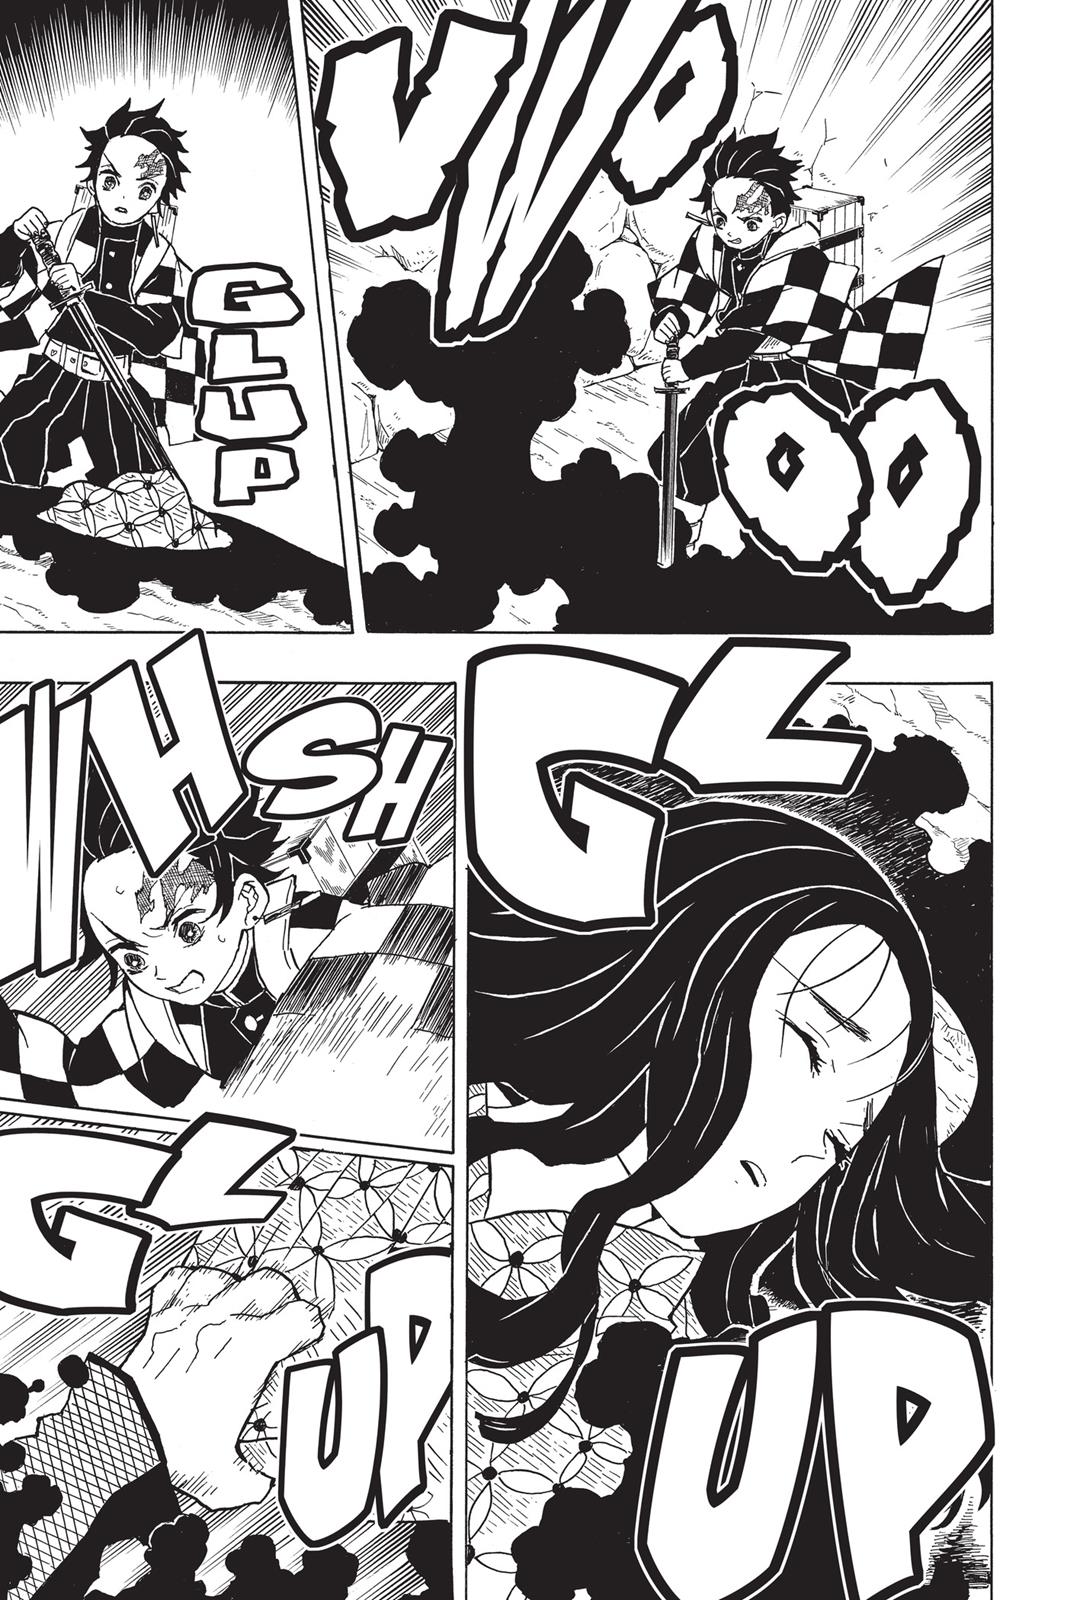 Demon Slayer Manga Manga Chapter - 10 - image 9